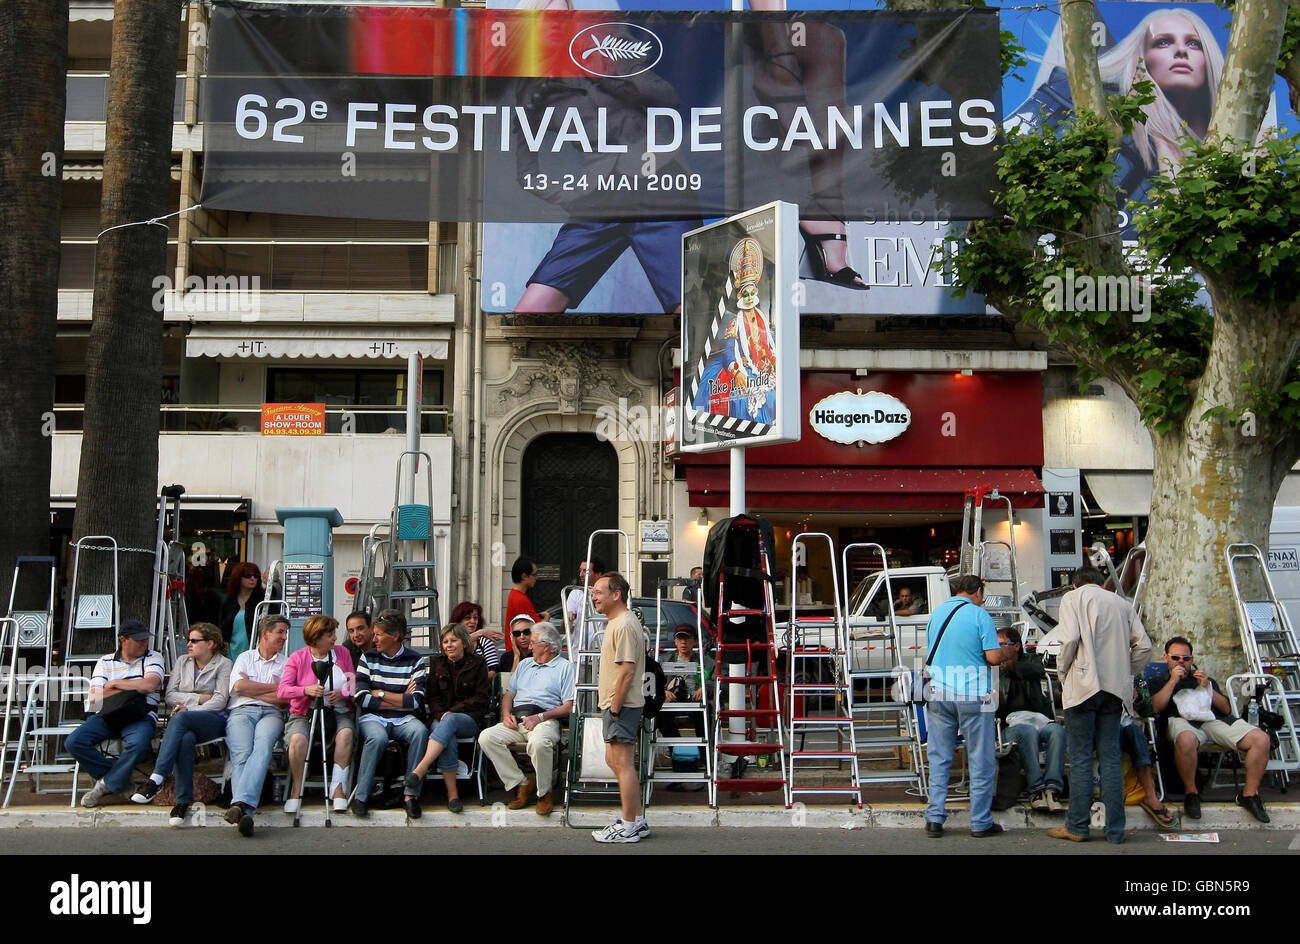 Les fans de steppders se rassemblent en face du Palais des Festivals, à Cannes, en France, avant le début du Festival de Cannes, qui commence demain. Banque D'Images